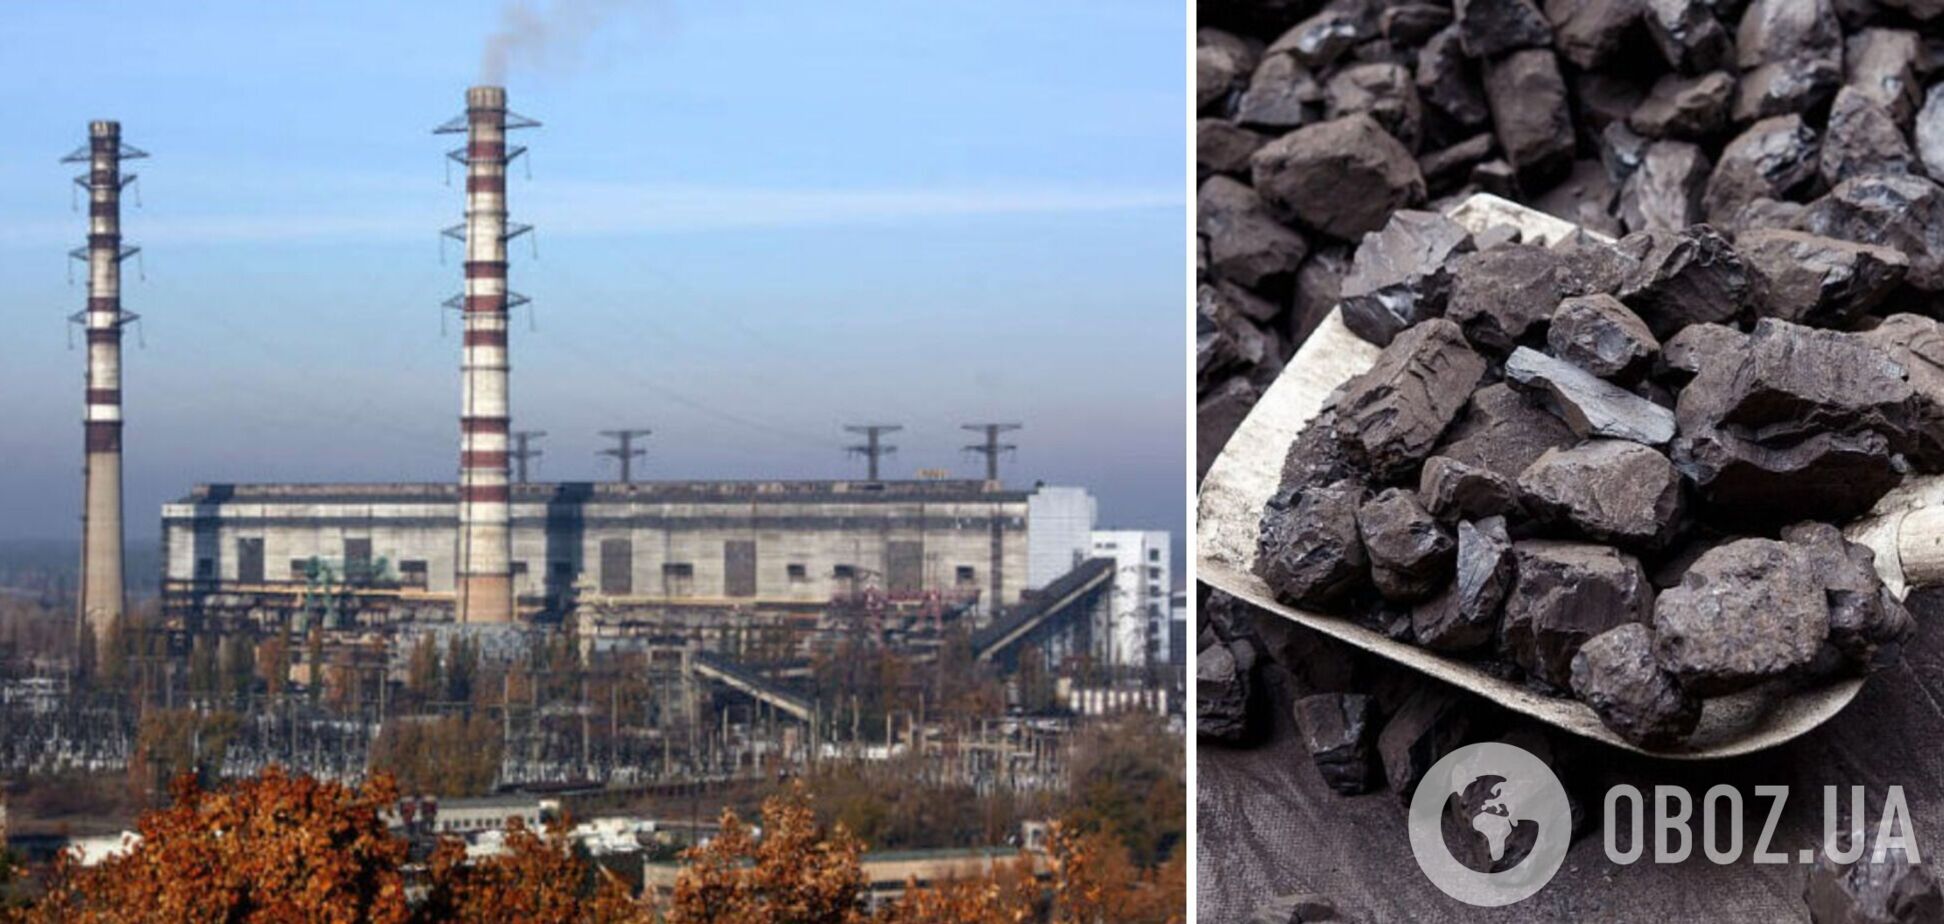 Запас угля на ТЭС государственной 'Центрэнерго' в 2 раза ниже минимально допустимого – Минэнерго